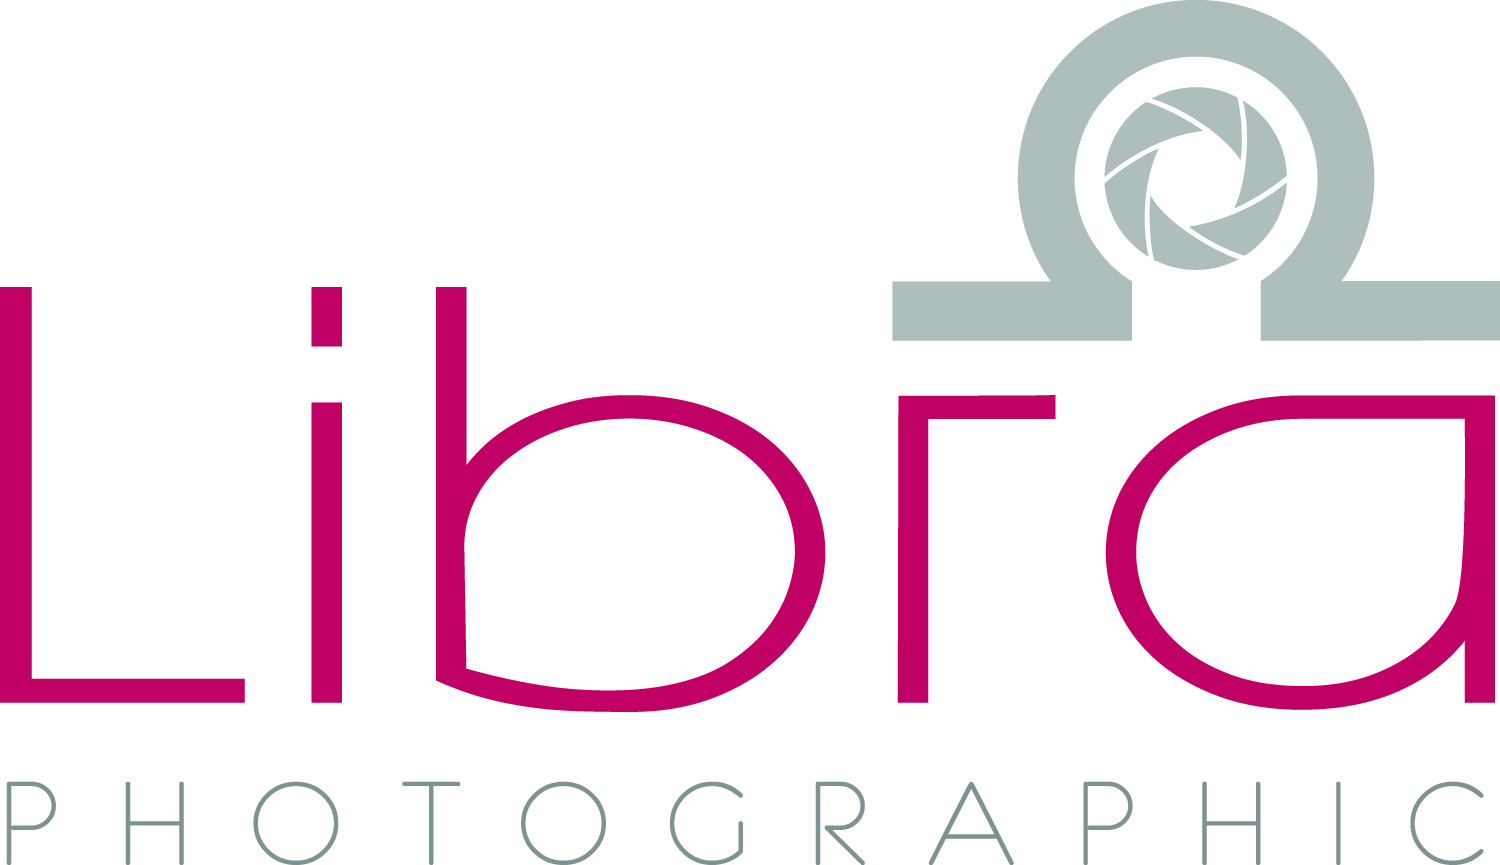 Libra Photographic